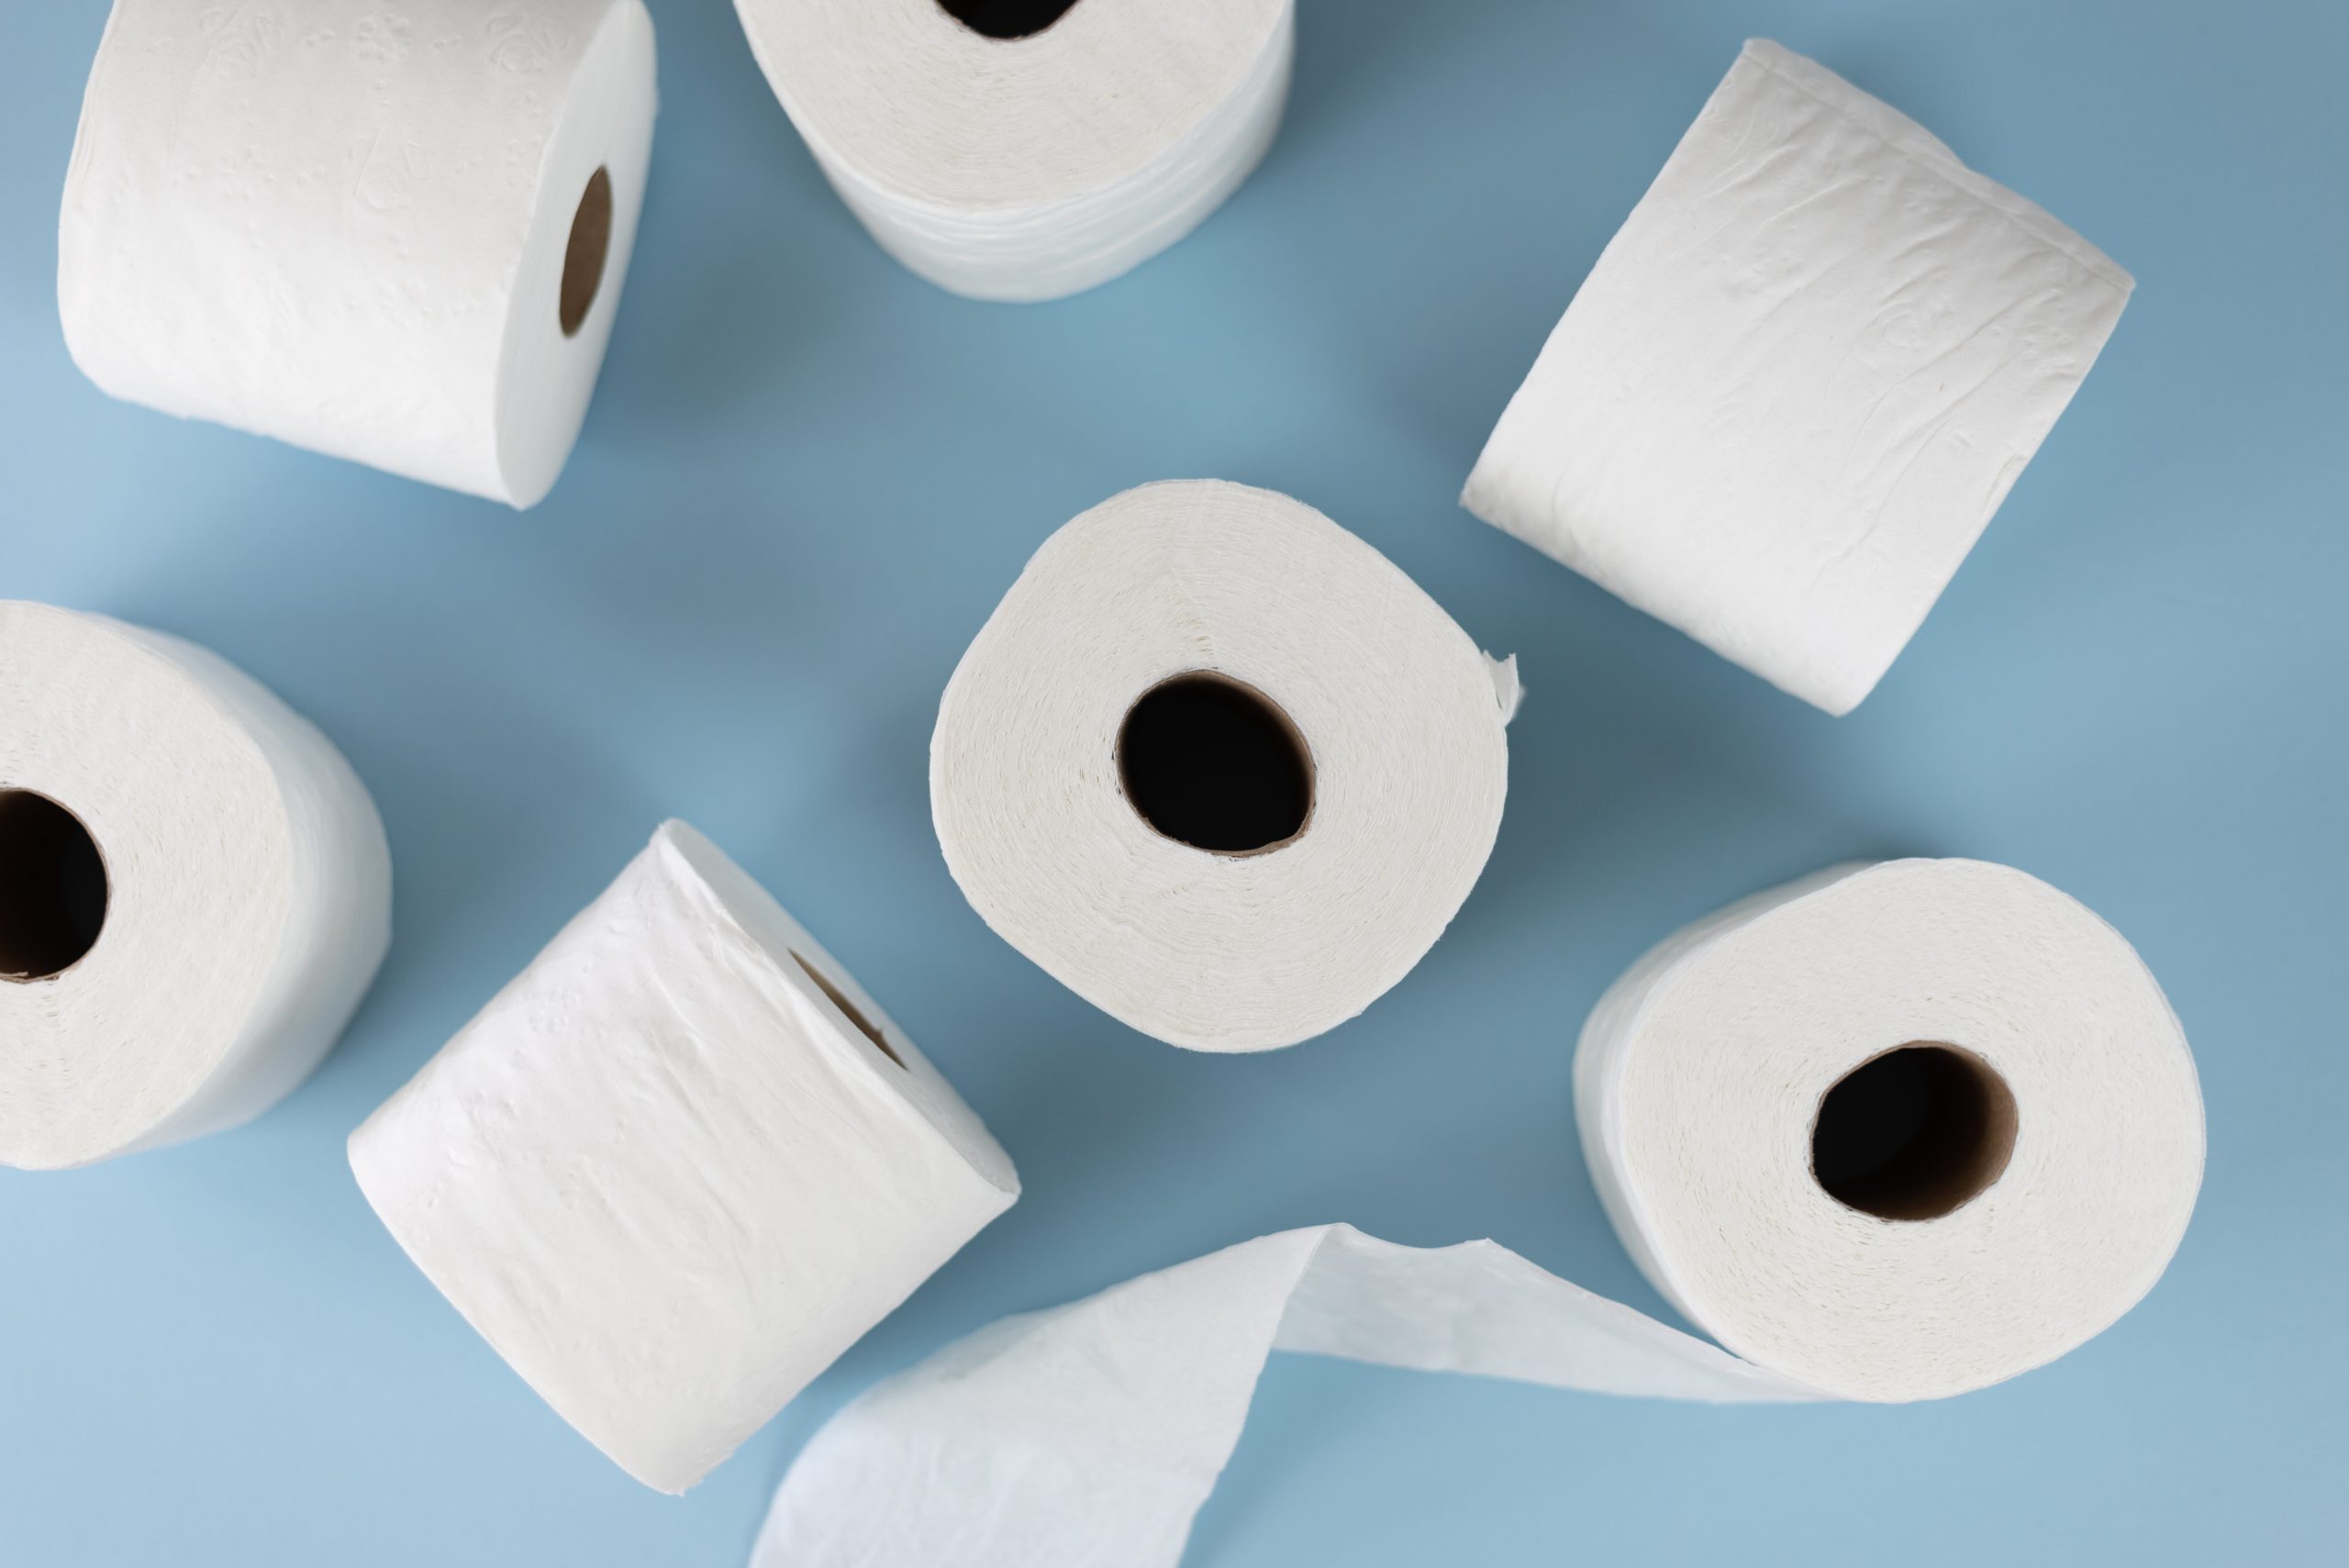 blauer Hintergrund. davor sieben rollen Toilettenpapier in weiß die durcheinander liegen